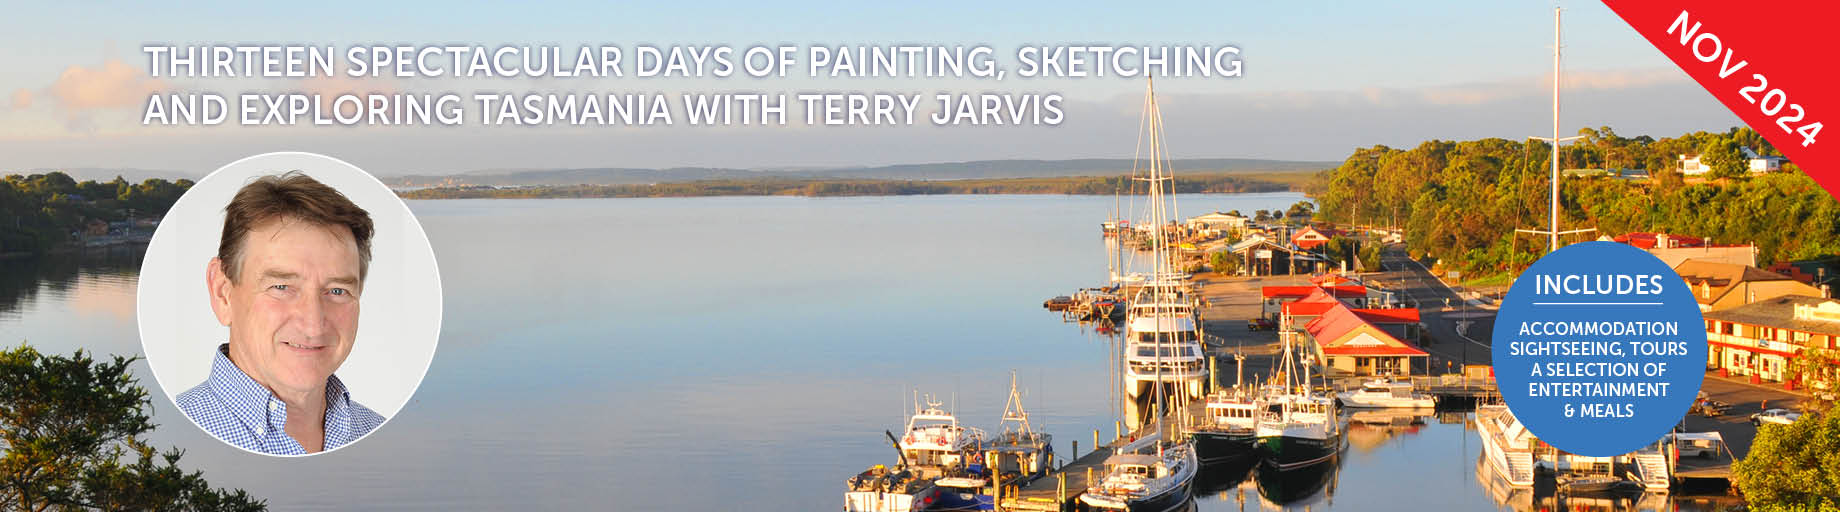 Tasmania Painting Workshop with Terry Jarvis